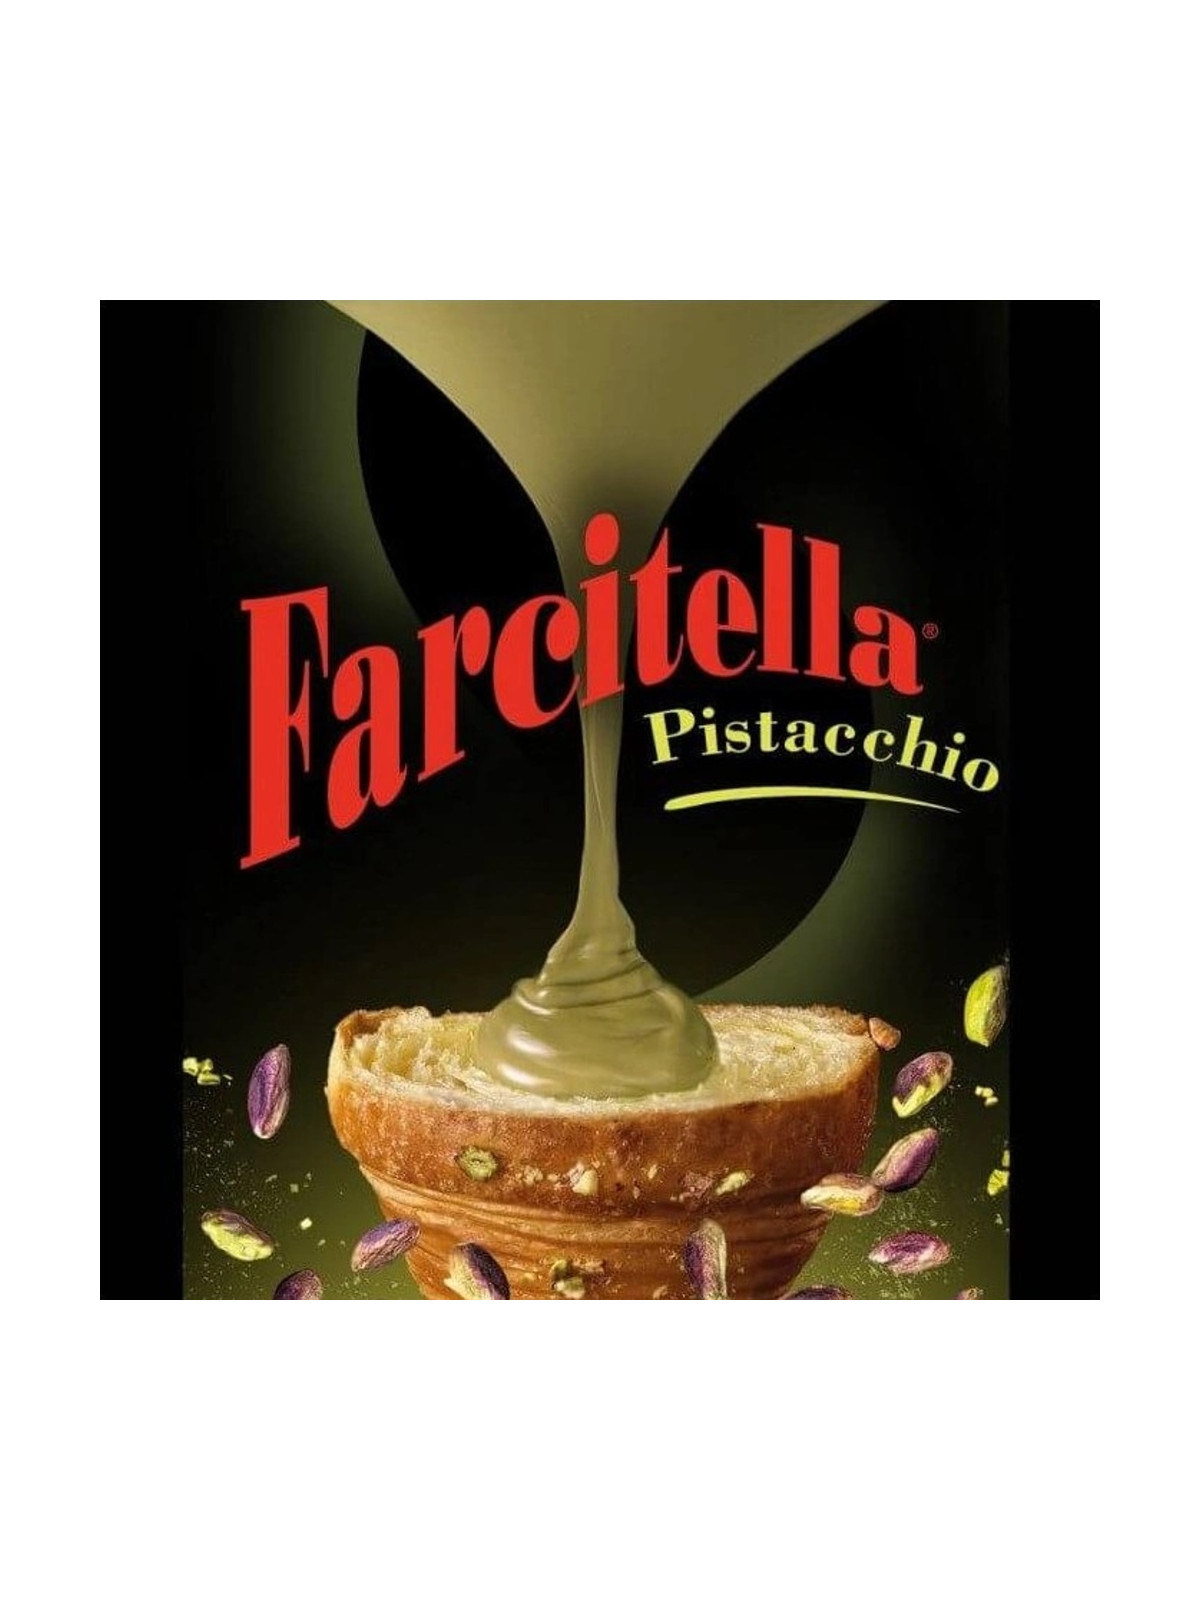 Farcitella Pistachio filling - pistachio - 200g